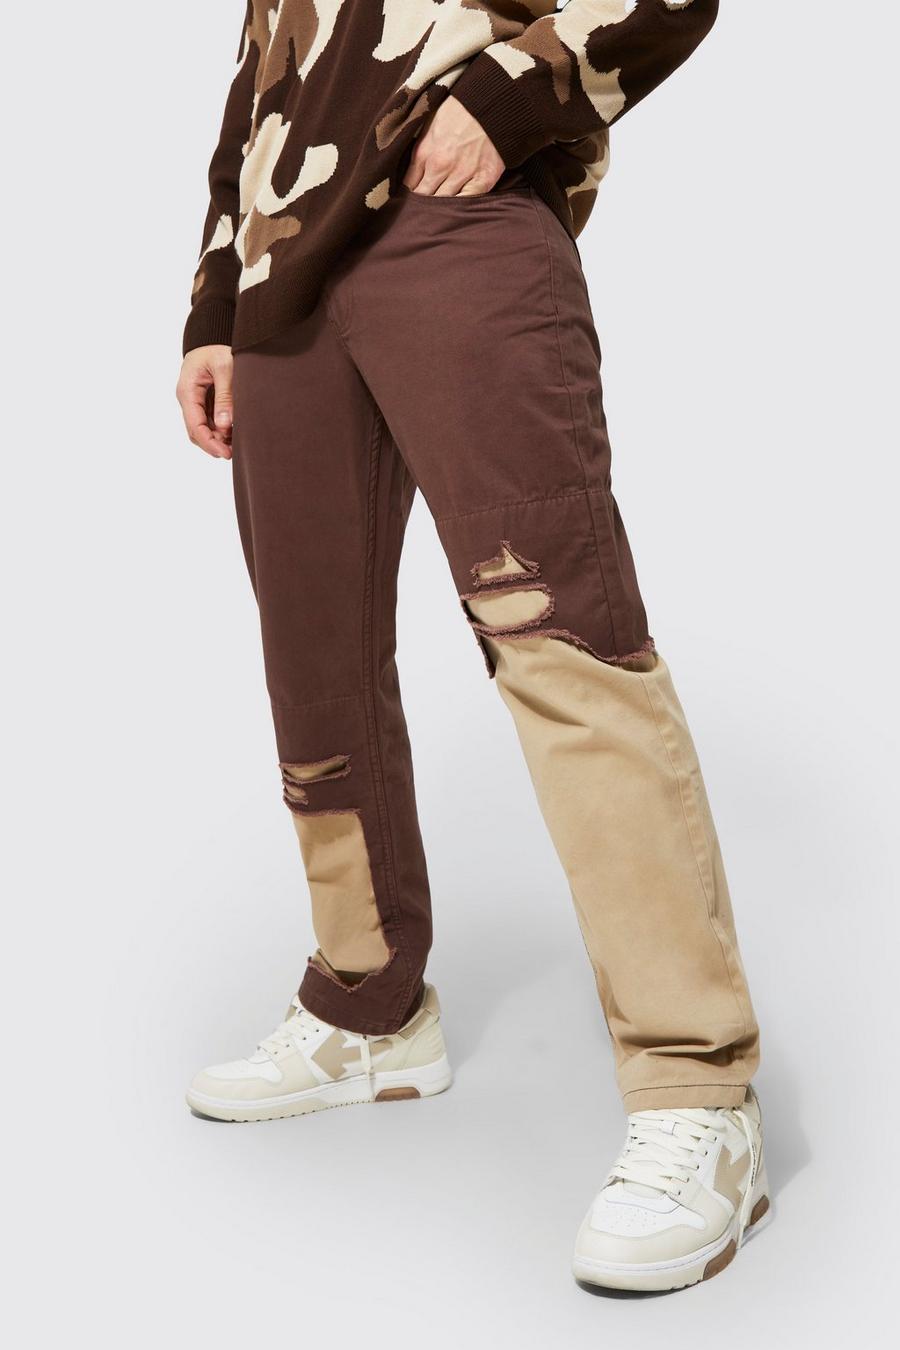 שוקולד marrón מכנסיים עם קרעים בגזרה ישרה